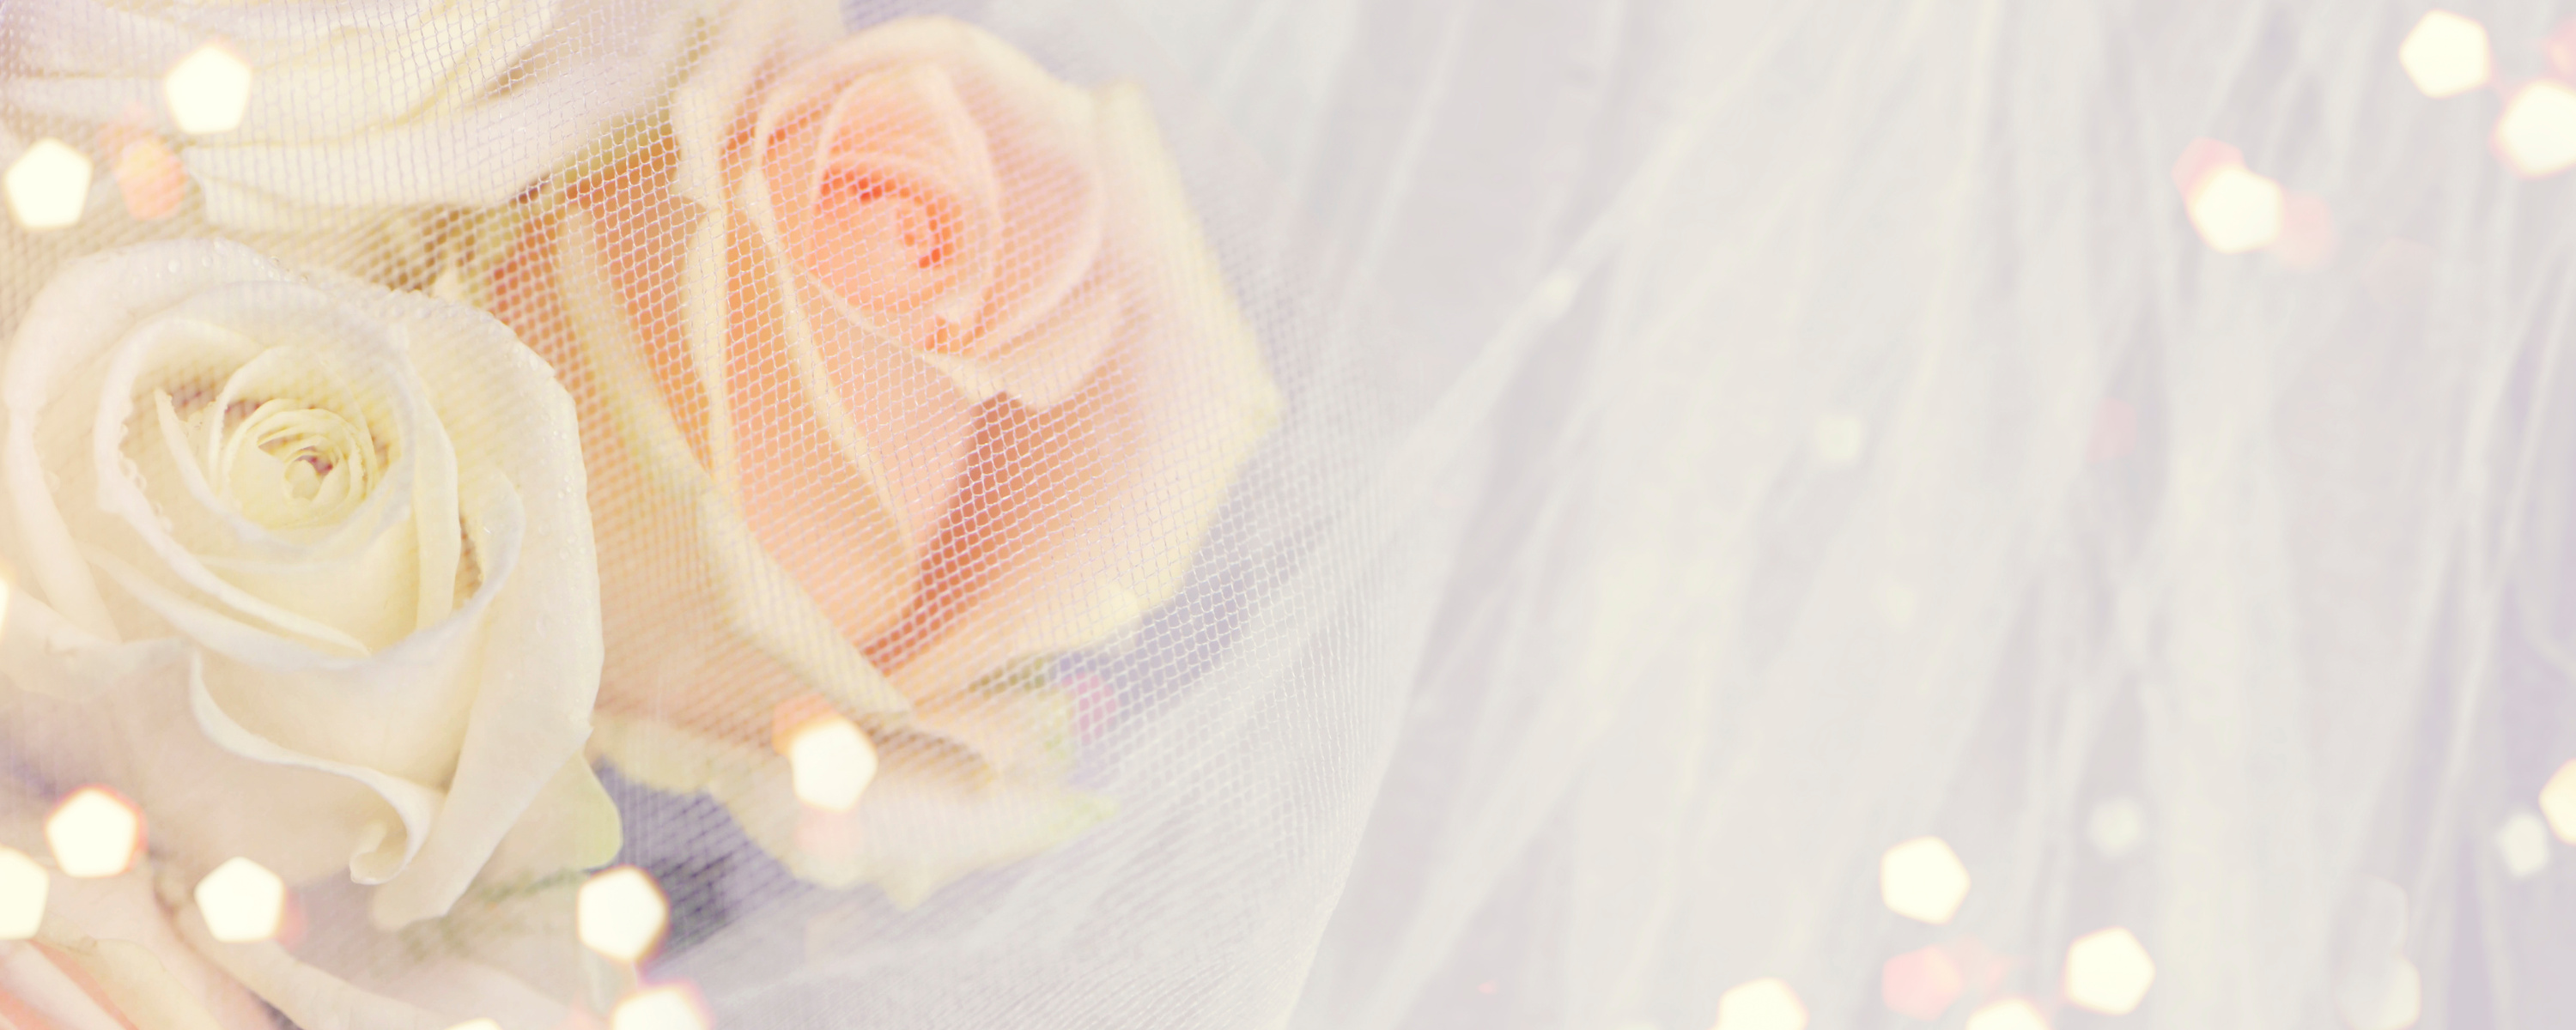 Wedding bouquet background.